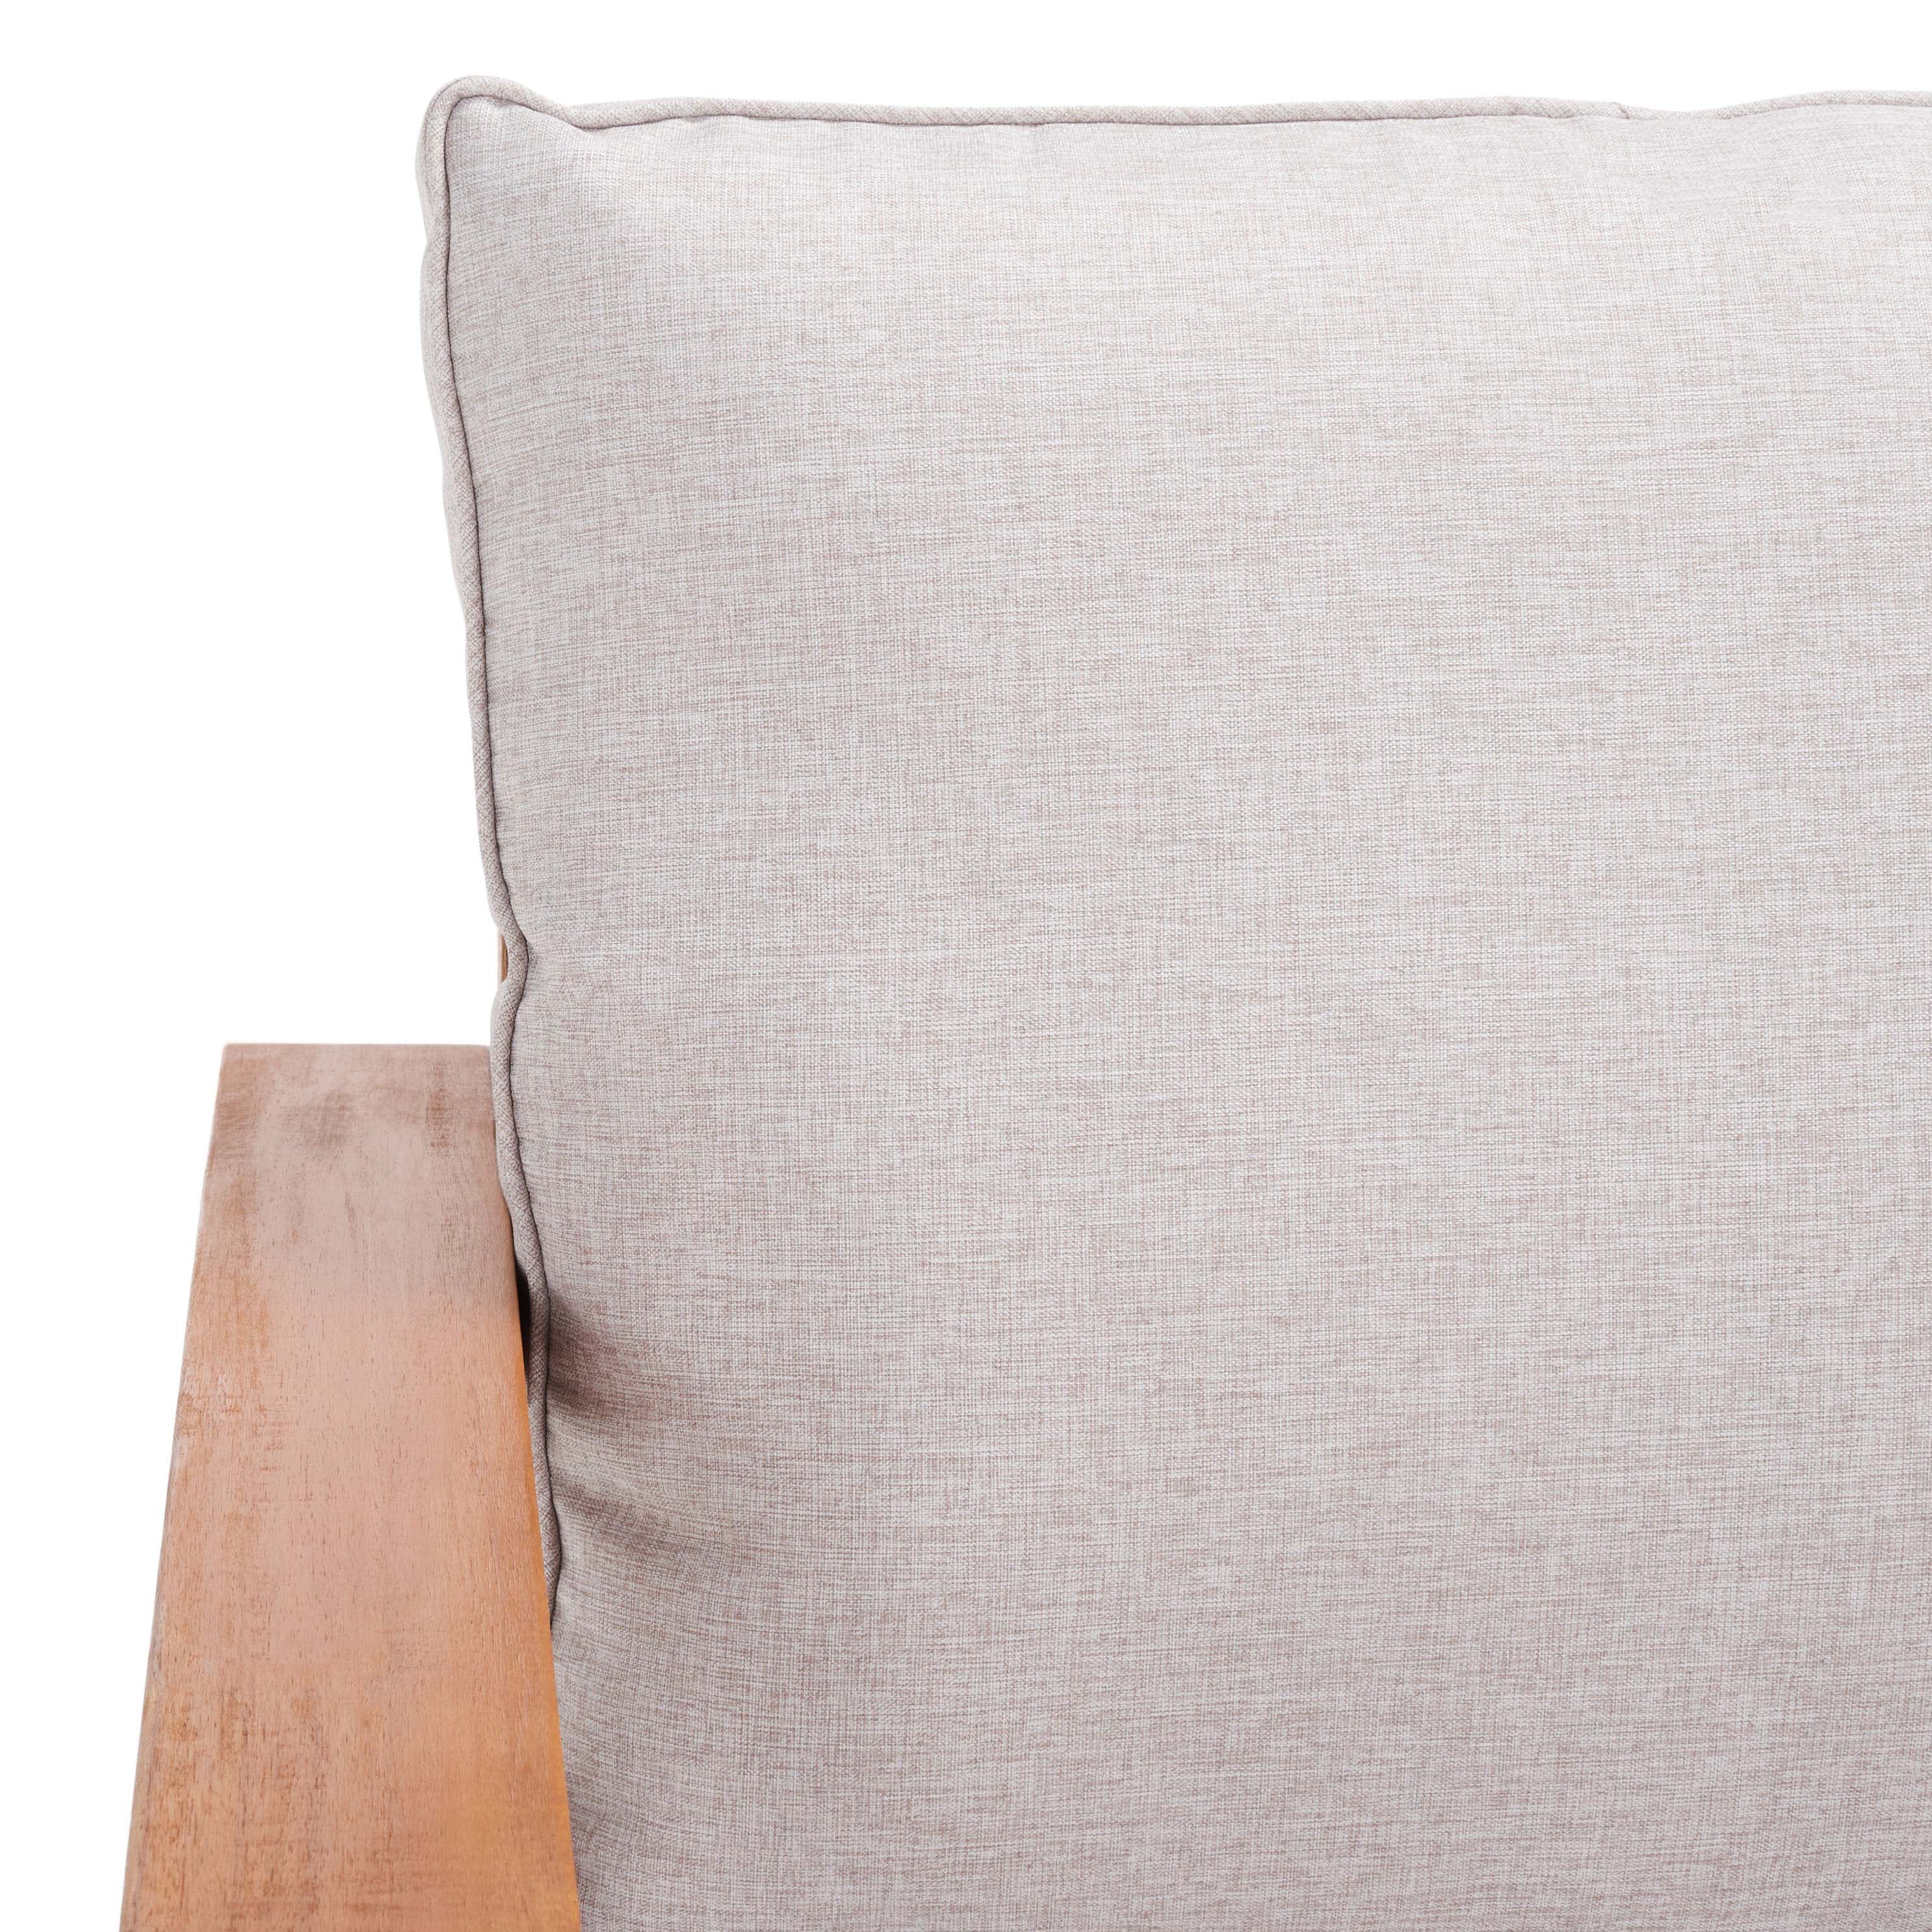 Natural/Light Grey Cushion